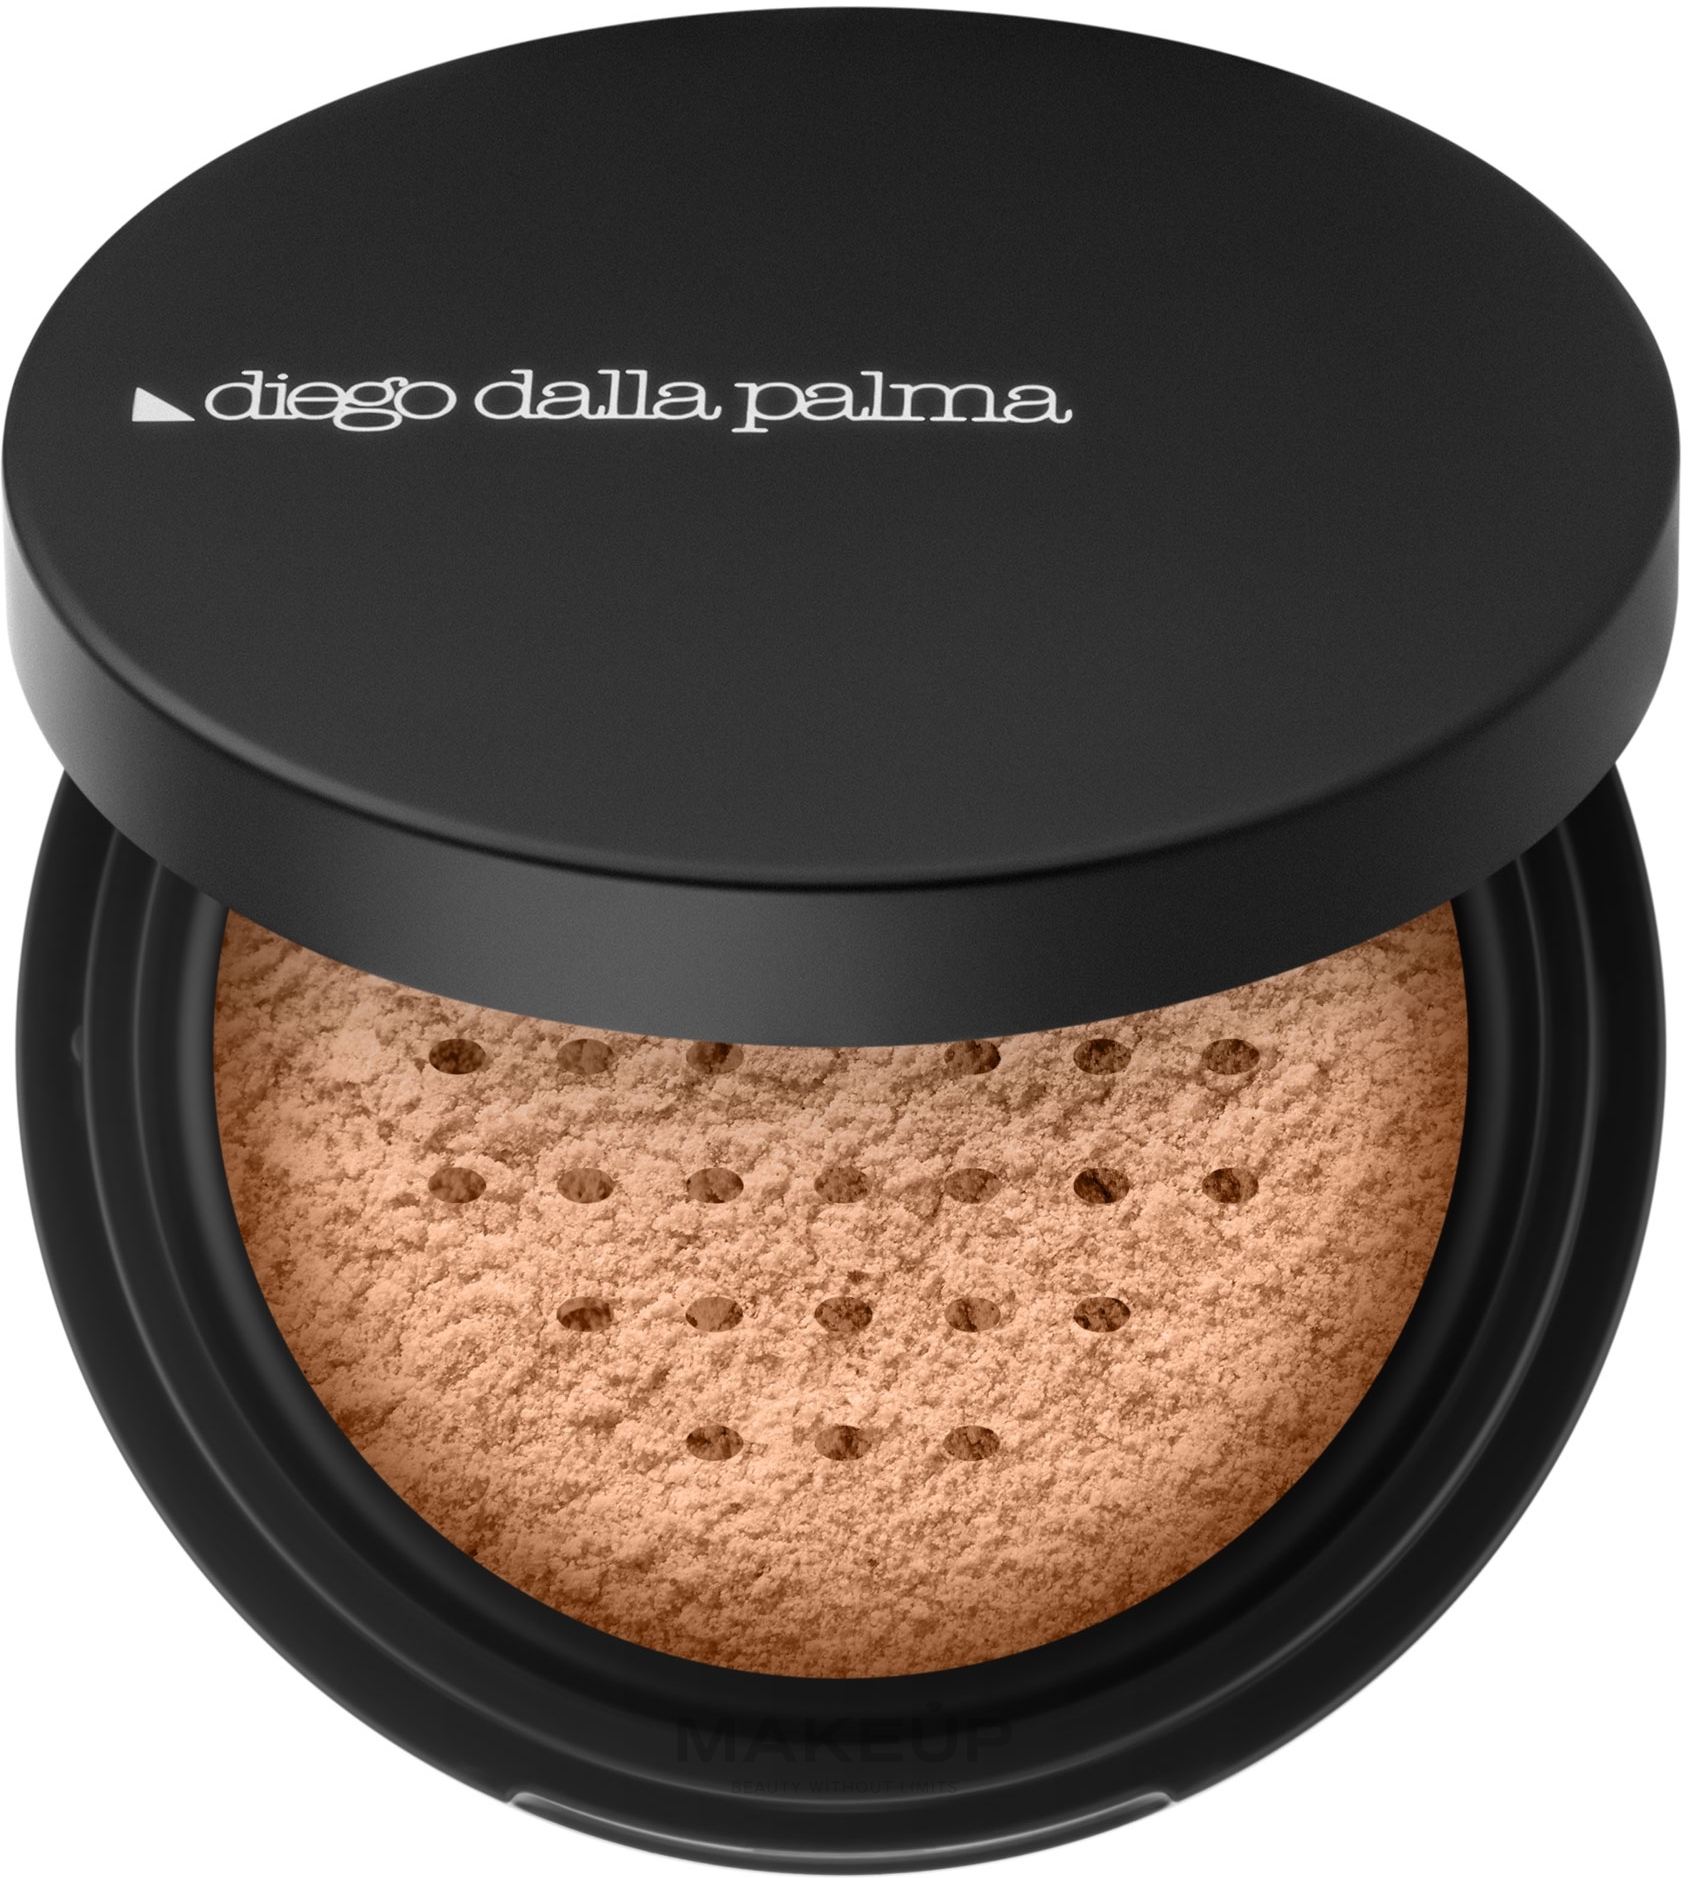 Sypki puder do twarzy - Diego Dalla Palma Loose Powder — Zdjęcie 01 - Transparent Light Skins